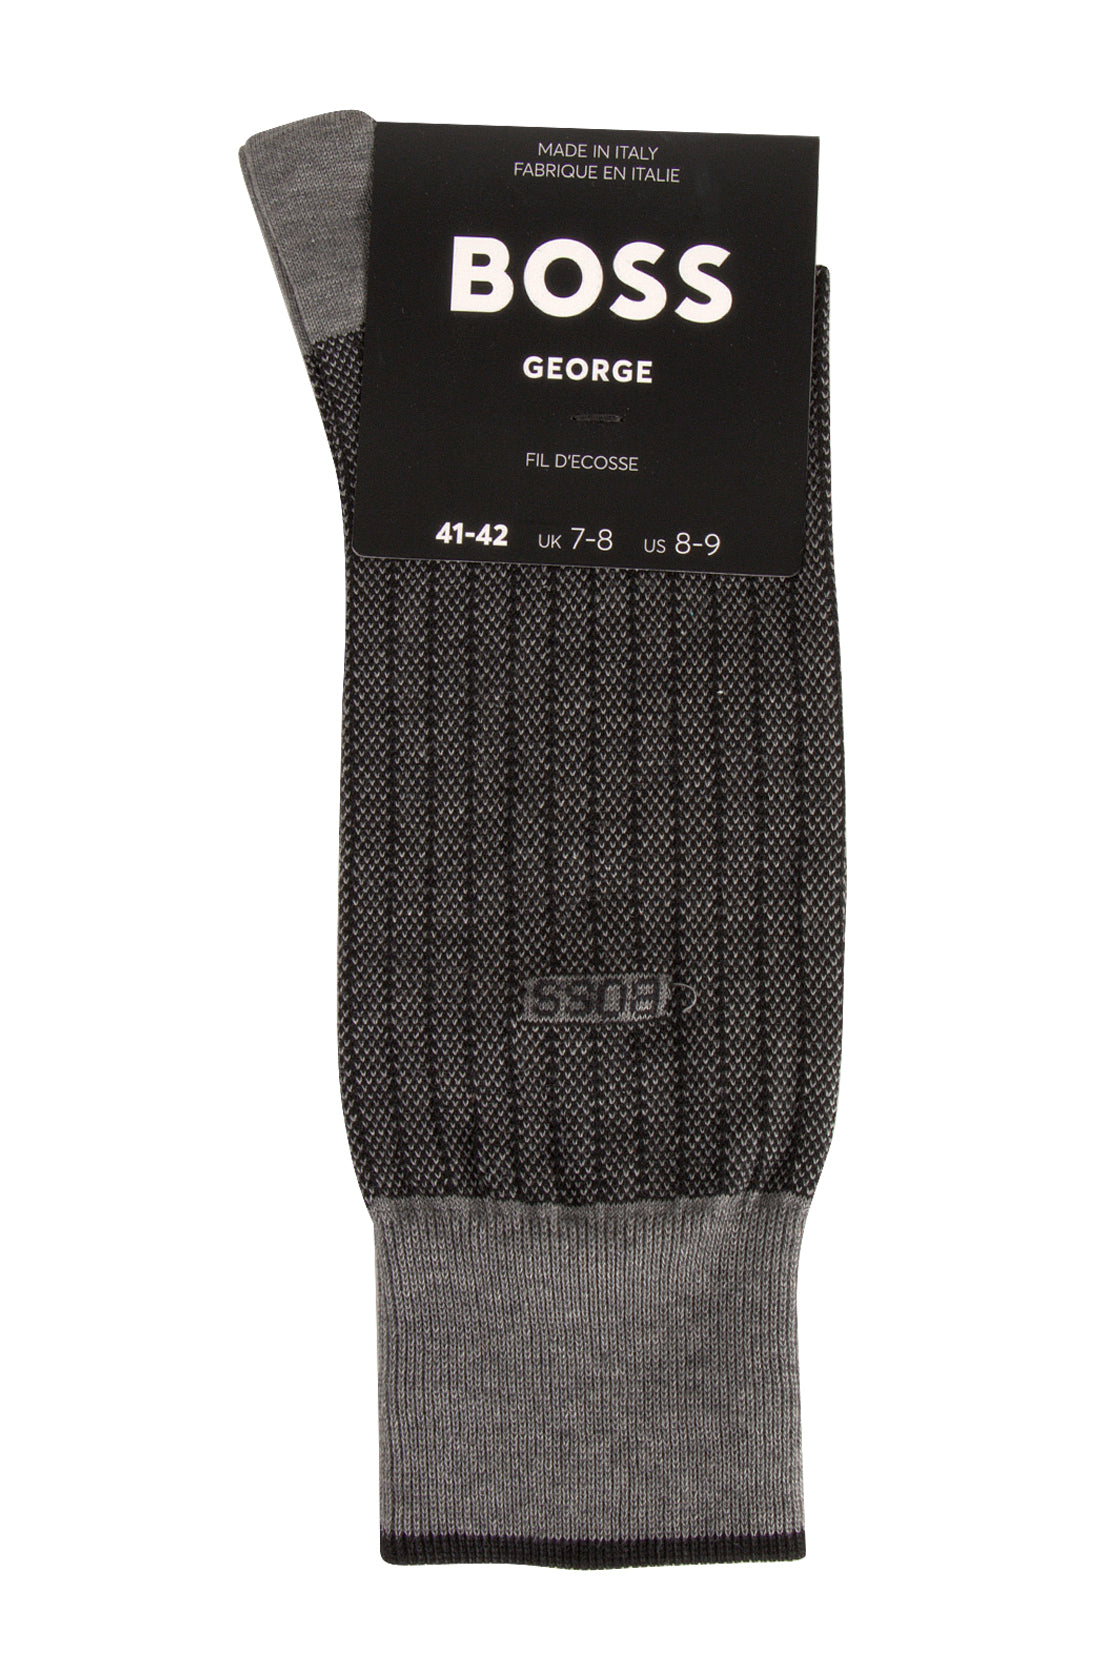 Hugo Boss George Socks Black